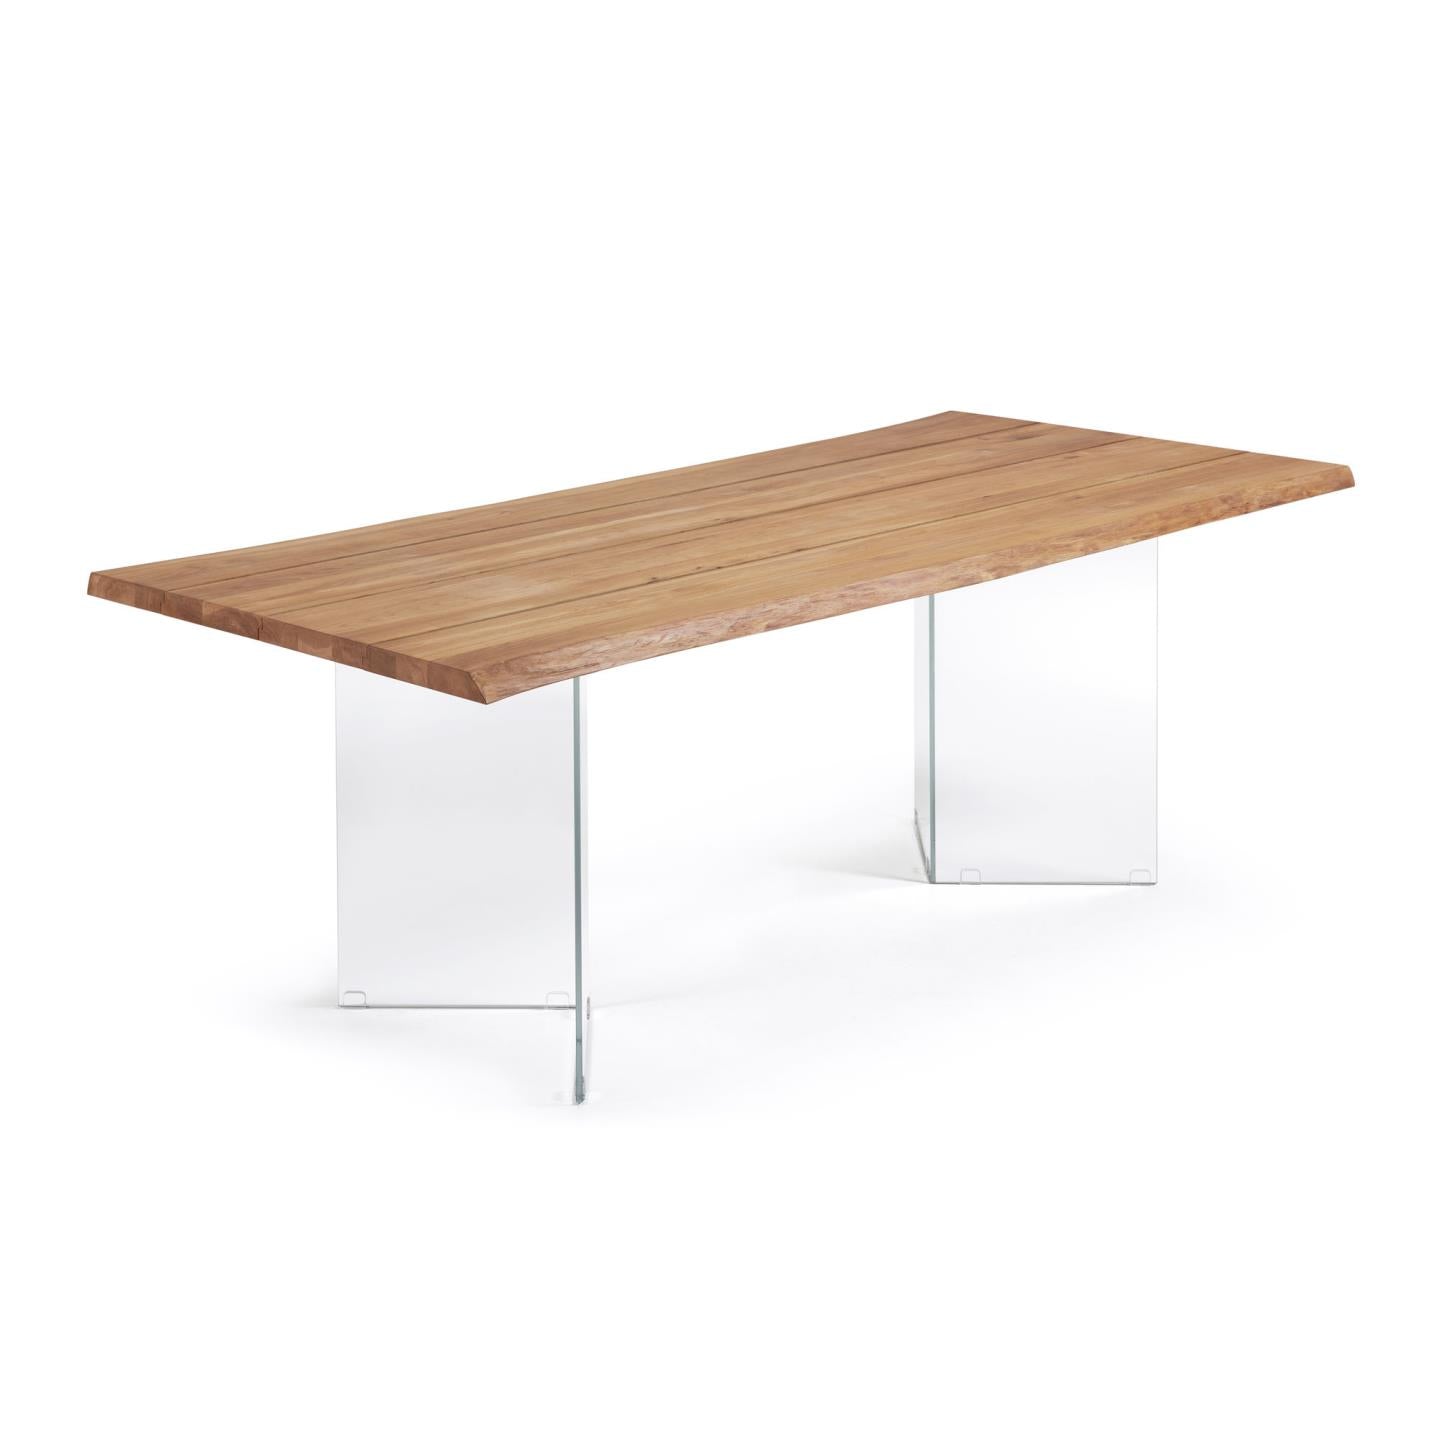 Lotty tölgyfa furnéros asztal, természetes kivitelben, üveglábakkal, 220 x 100 cm